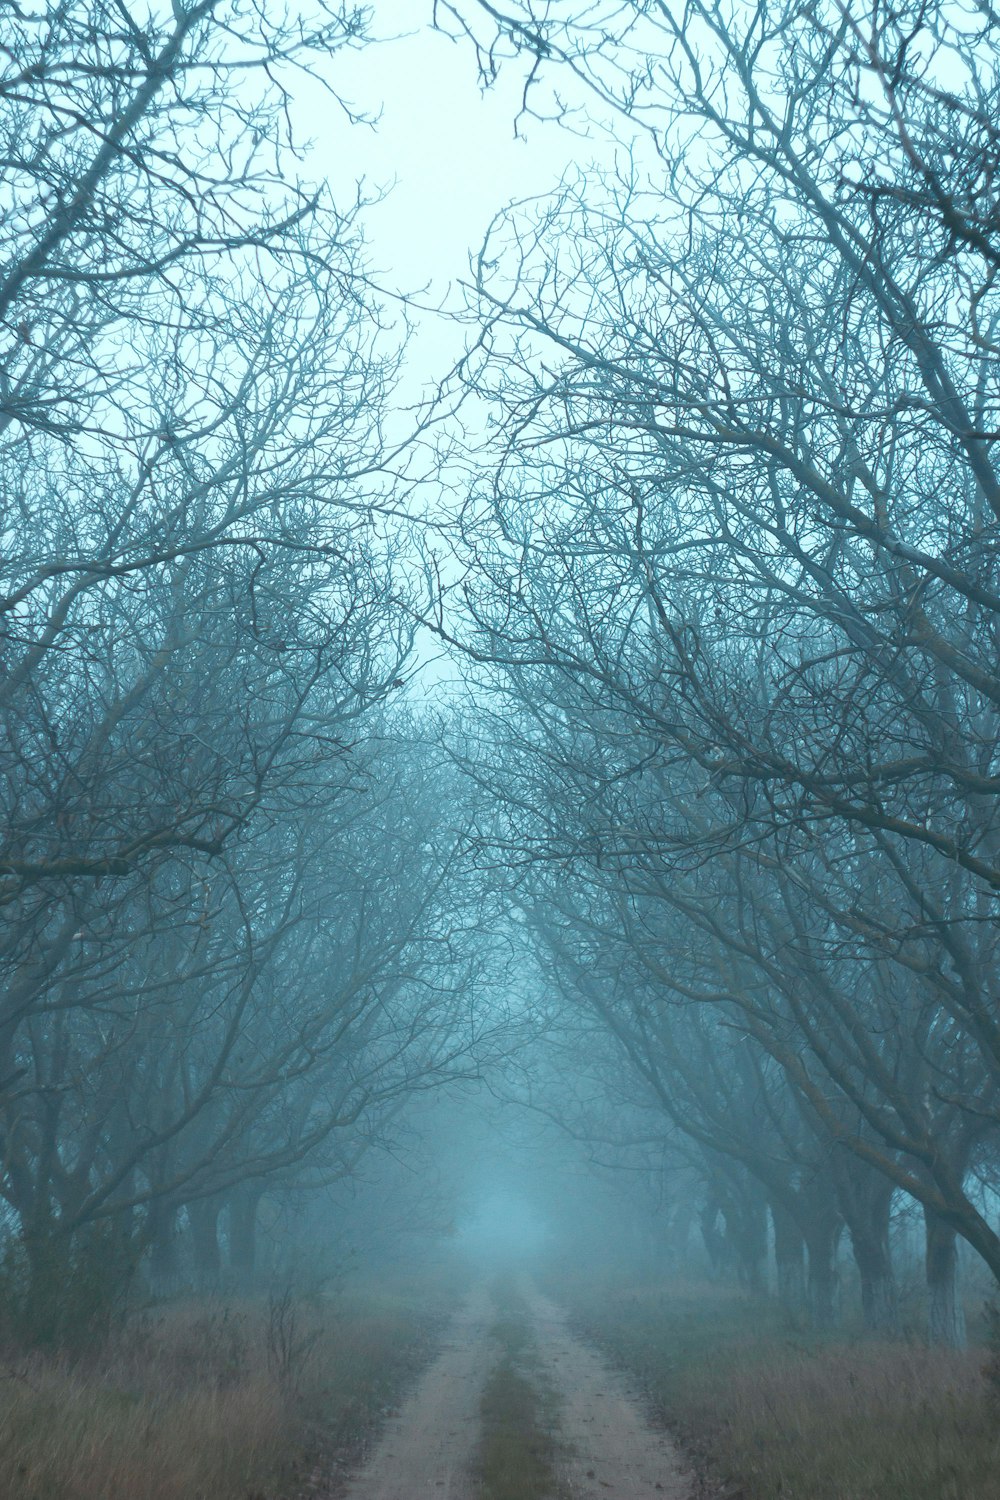 eine unbefestigte Straße, umgeben von Bäumen an einem nebligen Tag